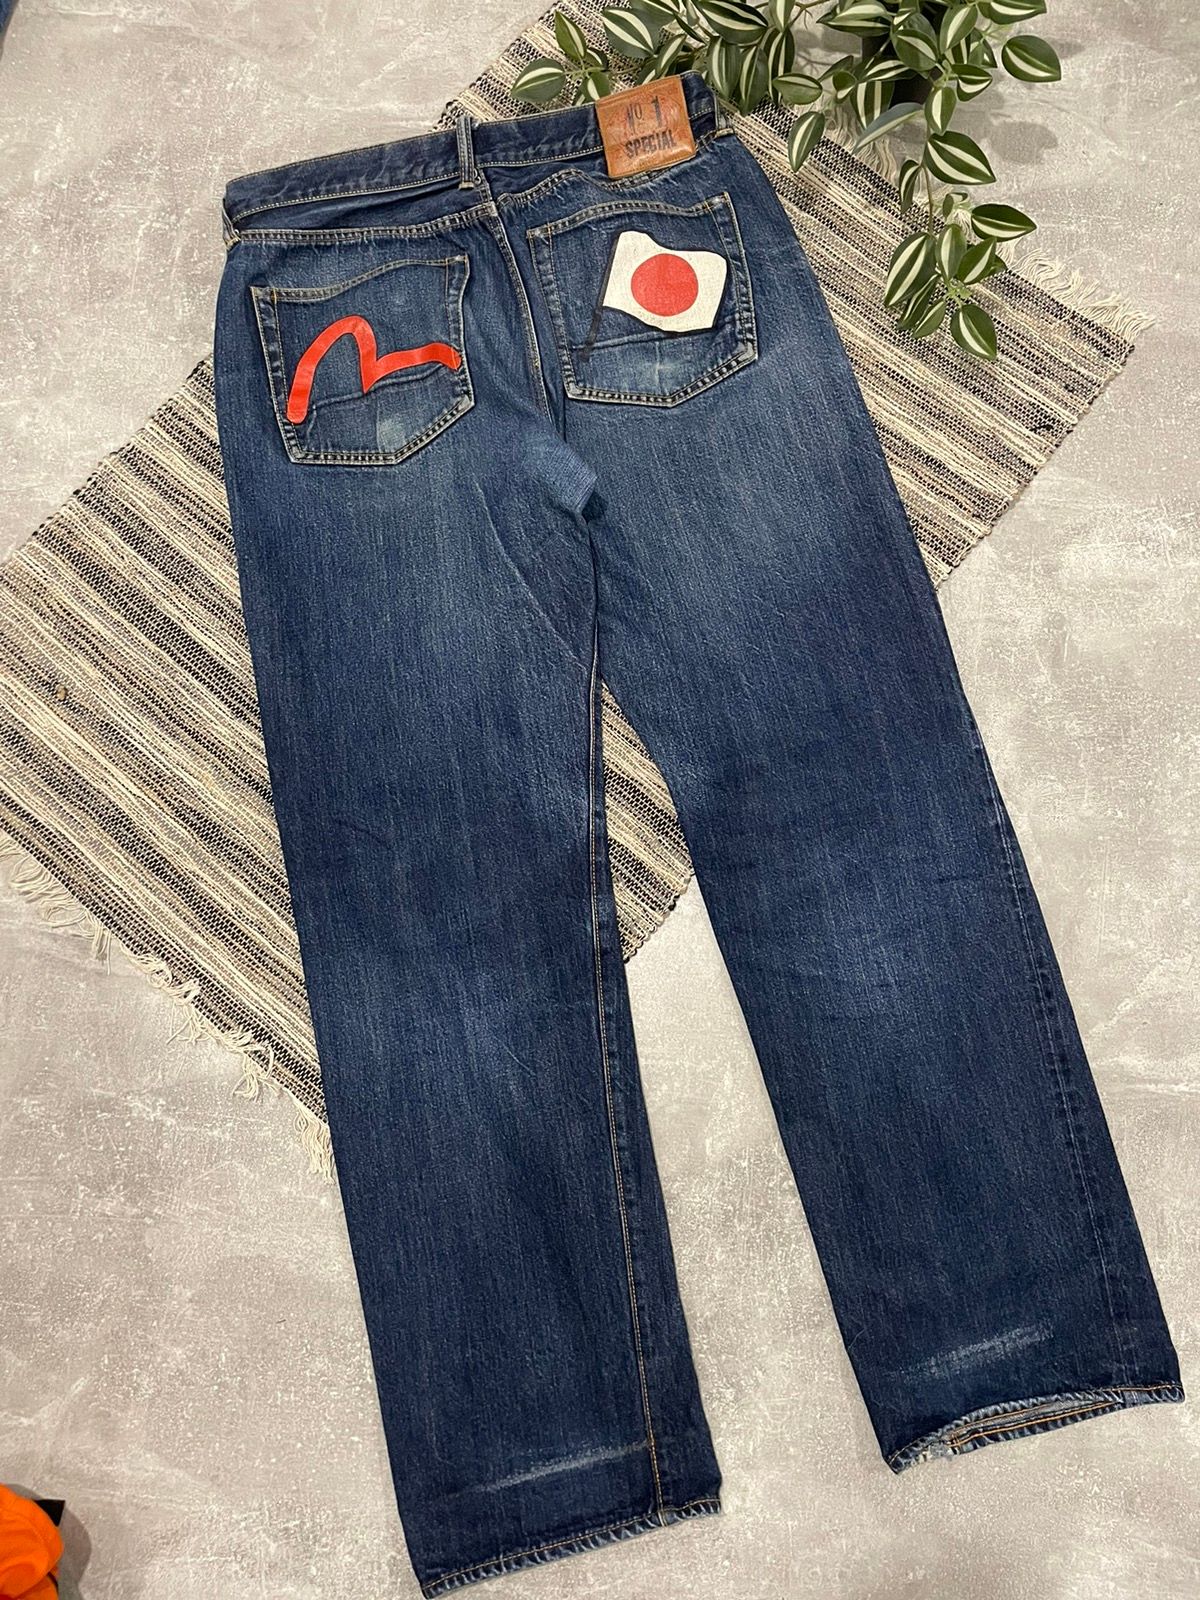 Pre-owned Avant Garde 90's Evisu Japan Speci Jeans Denim Pants Y2k Chrome Jnco Rock In Multicolor